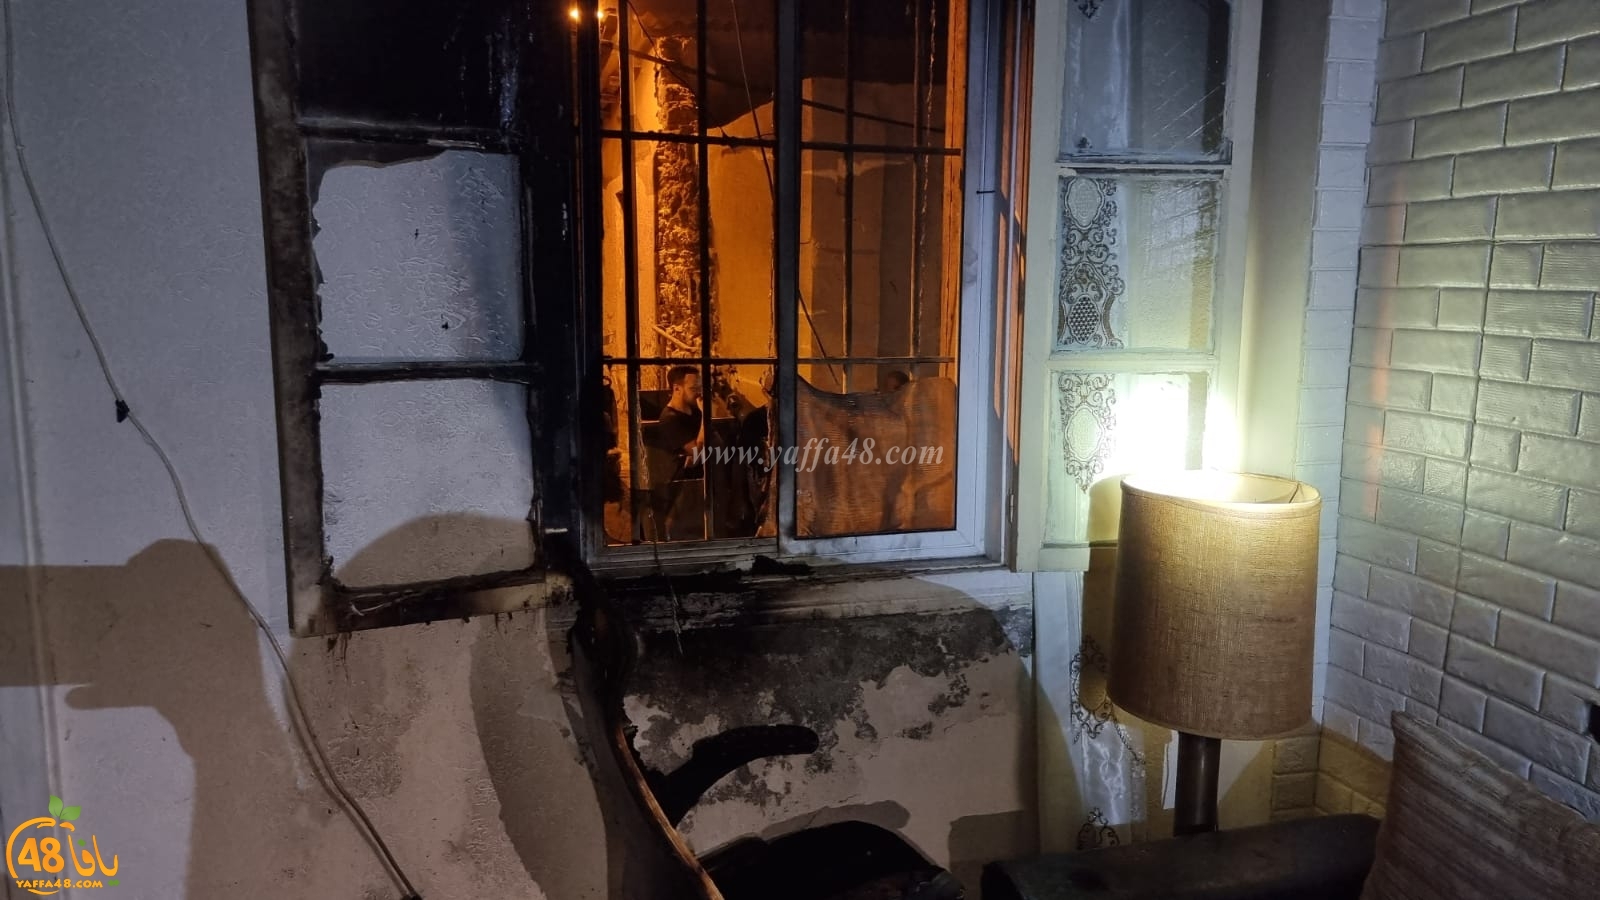  الشرطة: 3 مشتبهين عرب باحراق بيت عائلة جنتازي بيافا